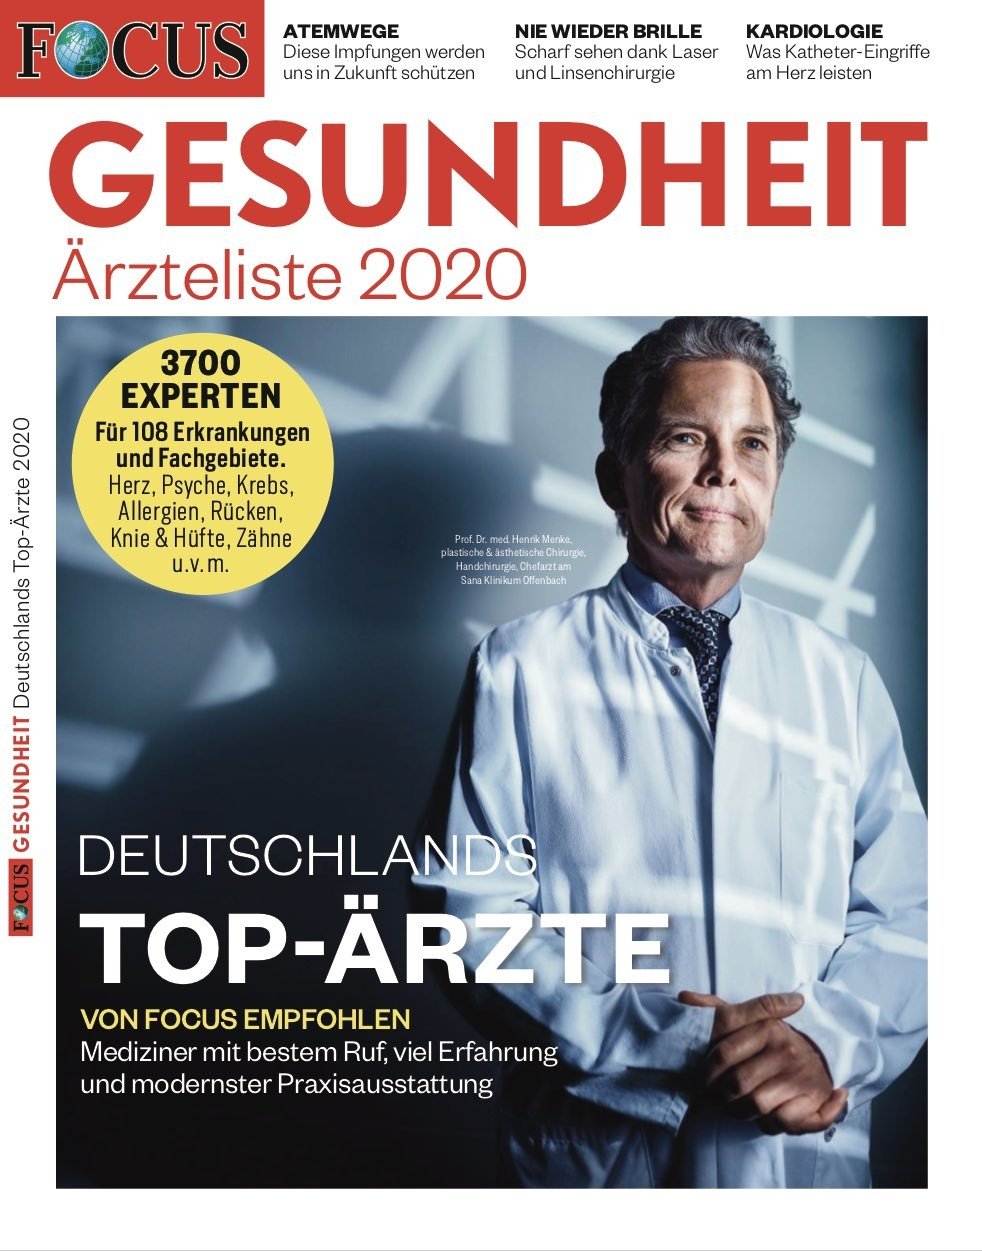 FOCUS-GESUNDHEIT  FOCUS Gesundheit - Deutschlands Top-Ärzte 2020